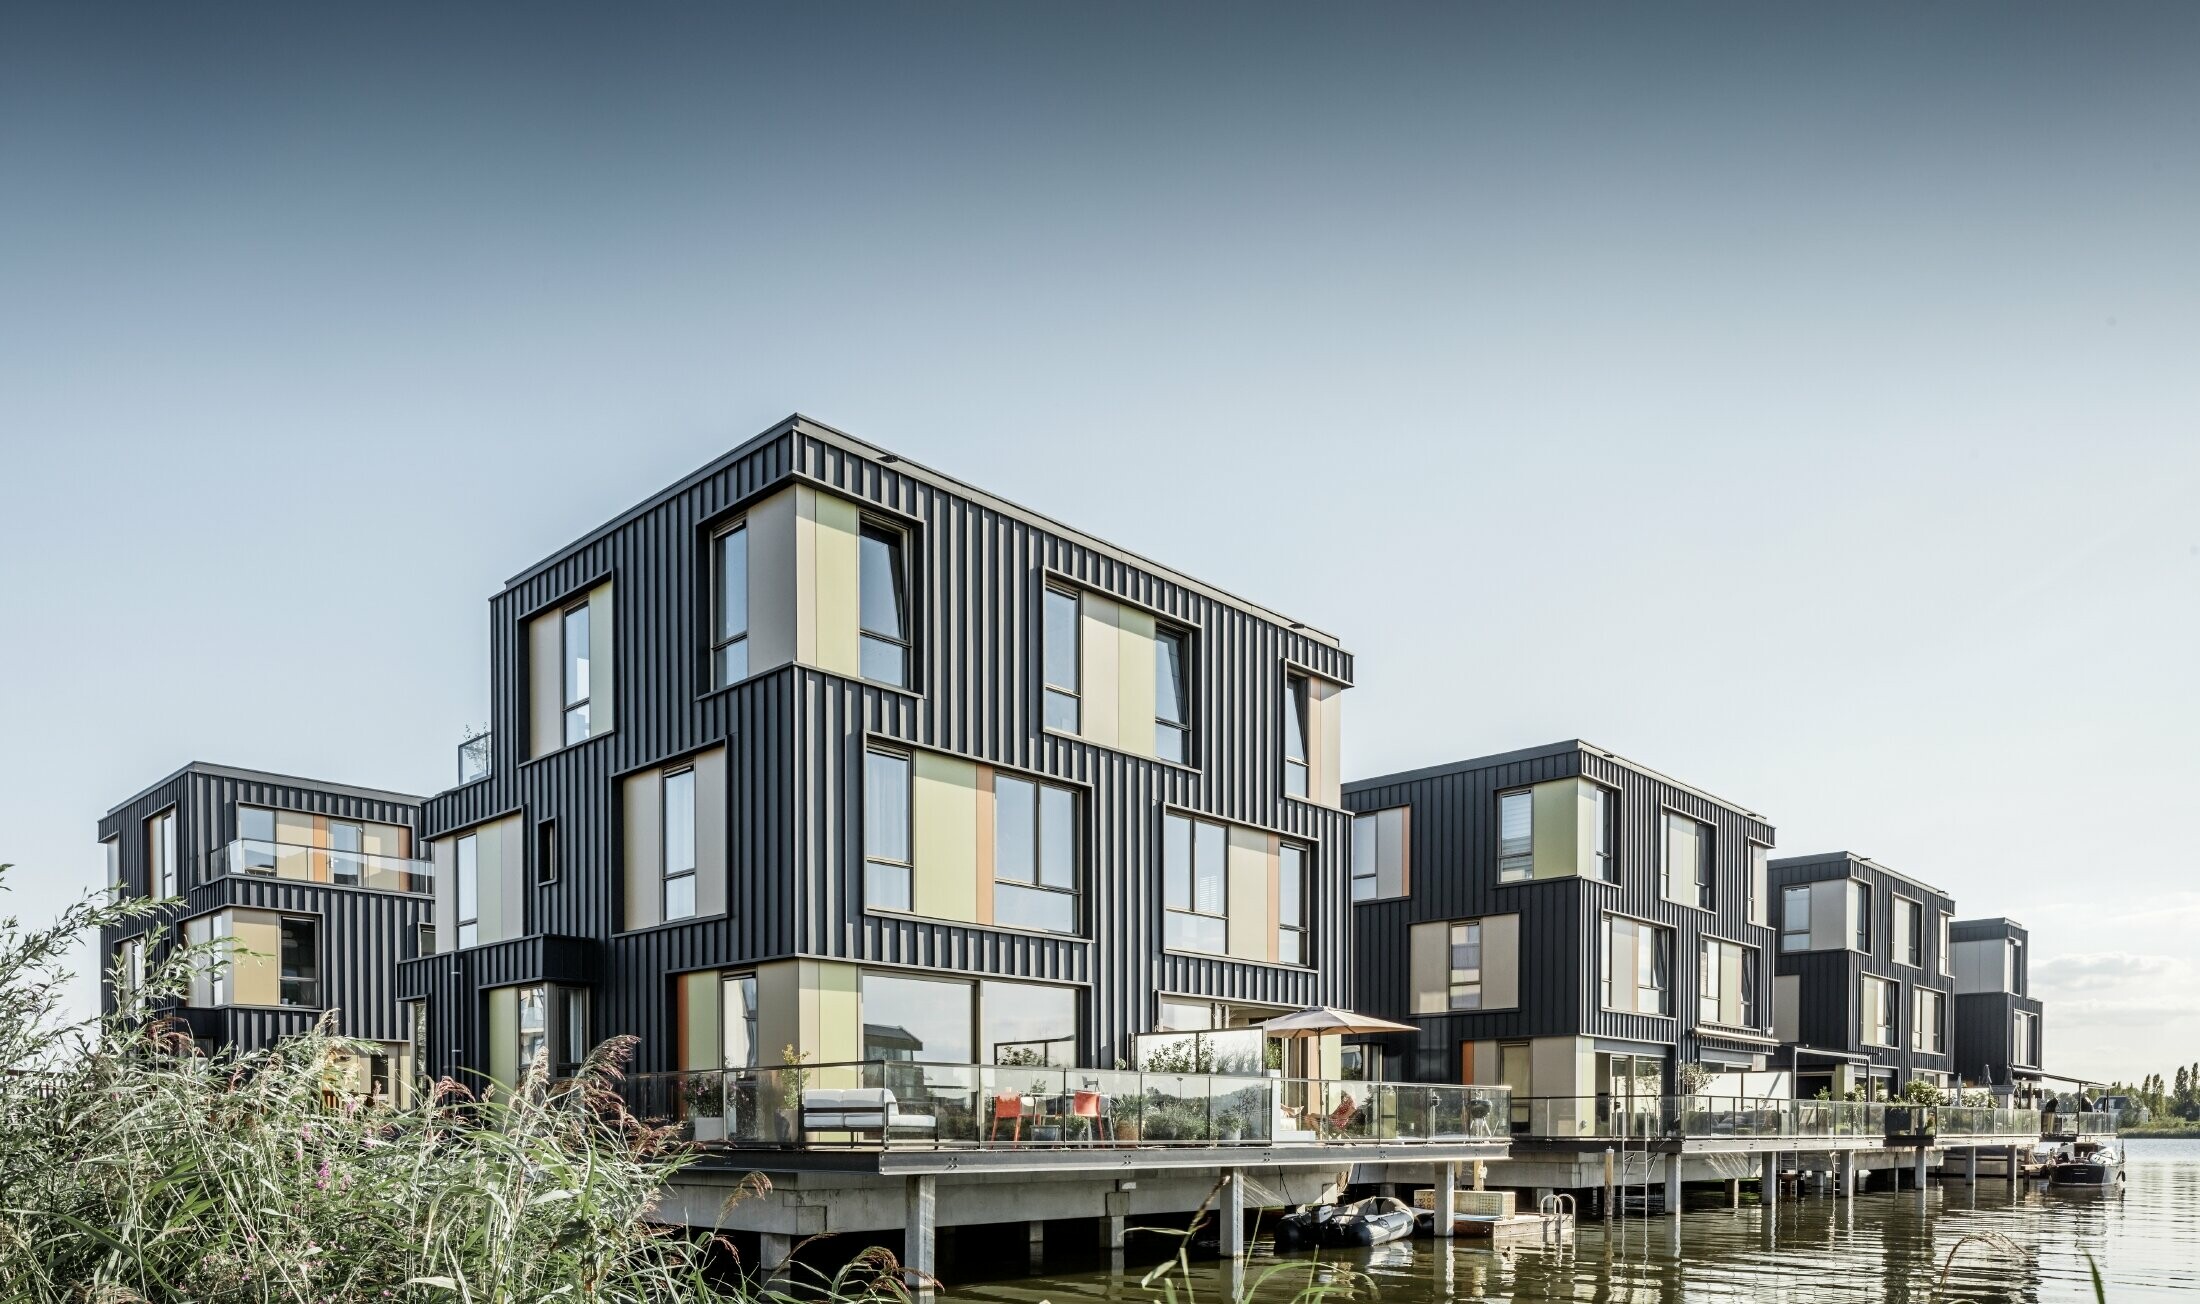 Ny boligpark med tomannsboliger ved en innsjø i Amsterdam. Husene er kledd med Prefalz fra PREFA i P.10 antrasitt.